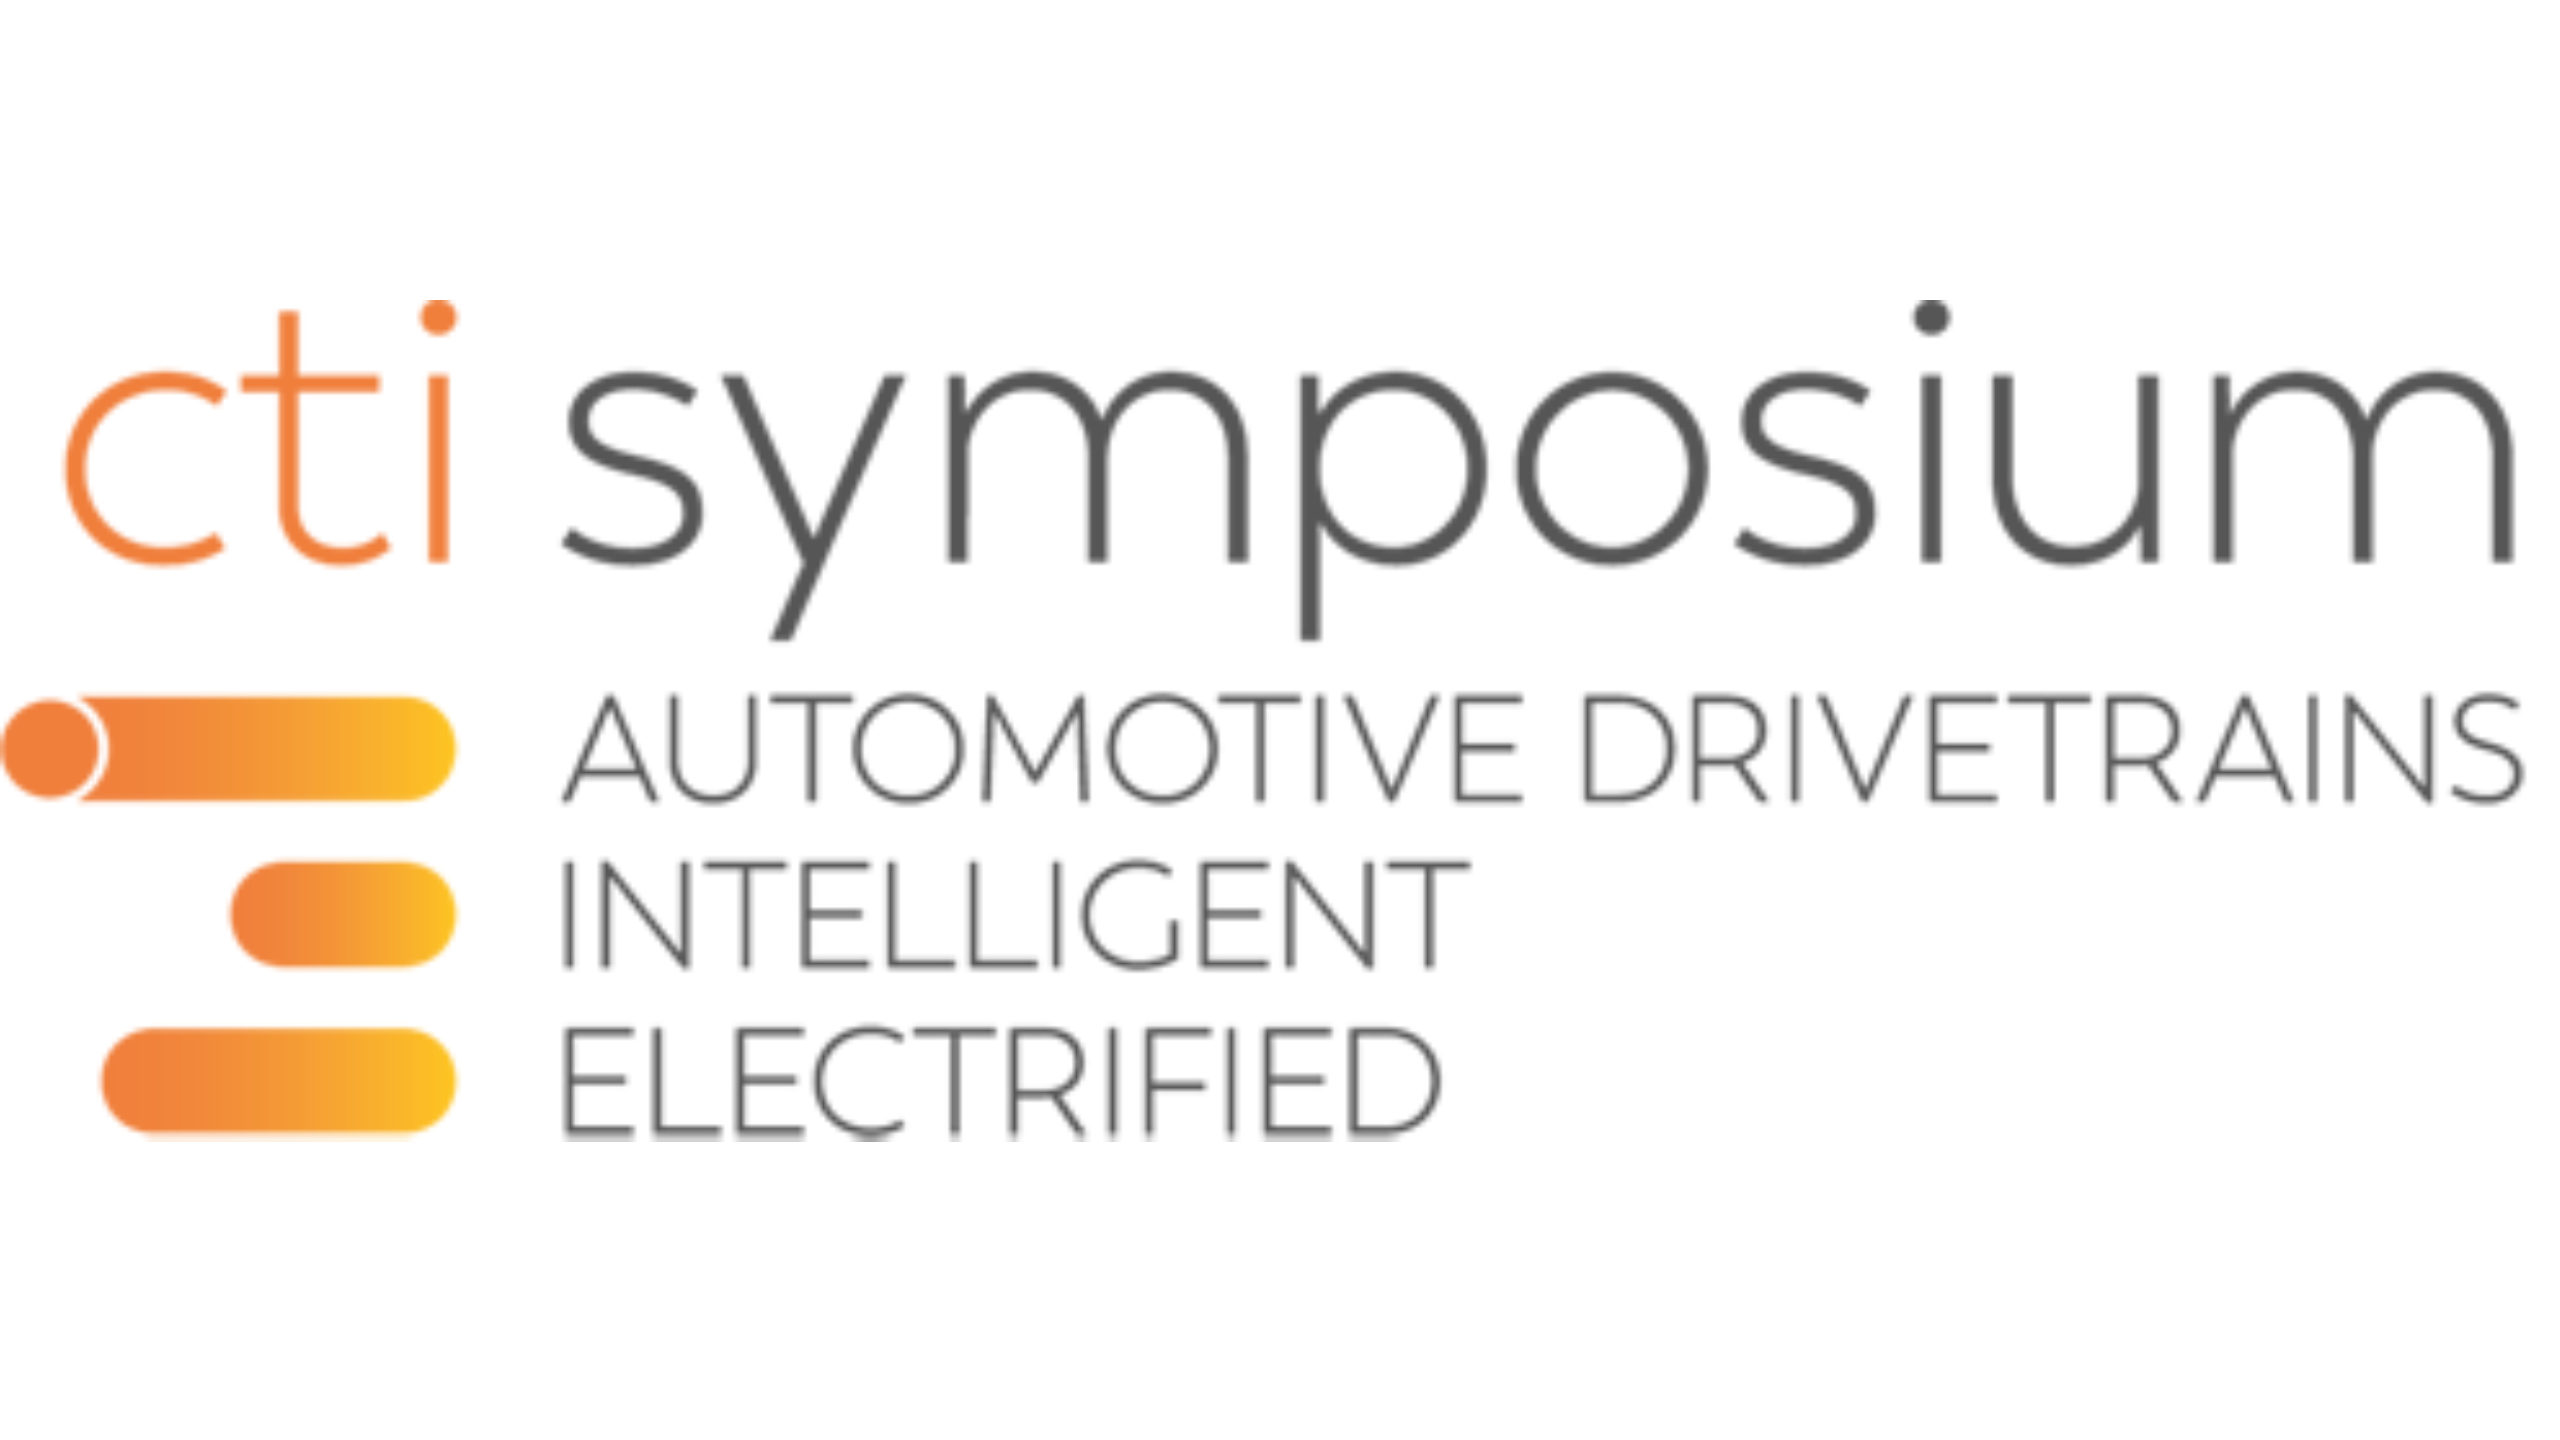 events-cti-symposium-logo-16-9